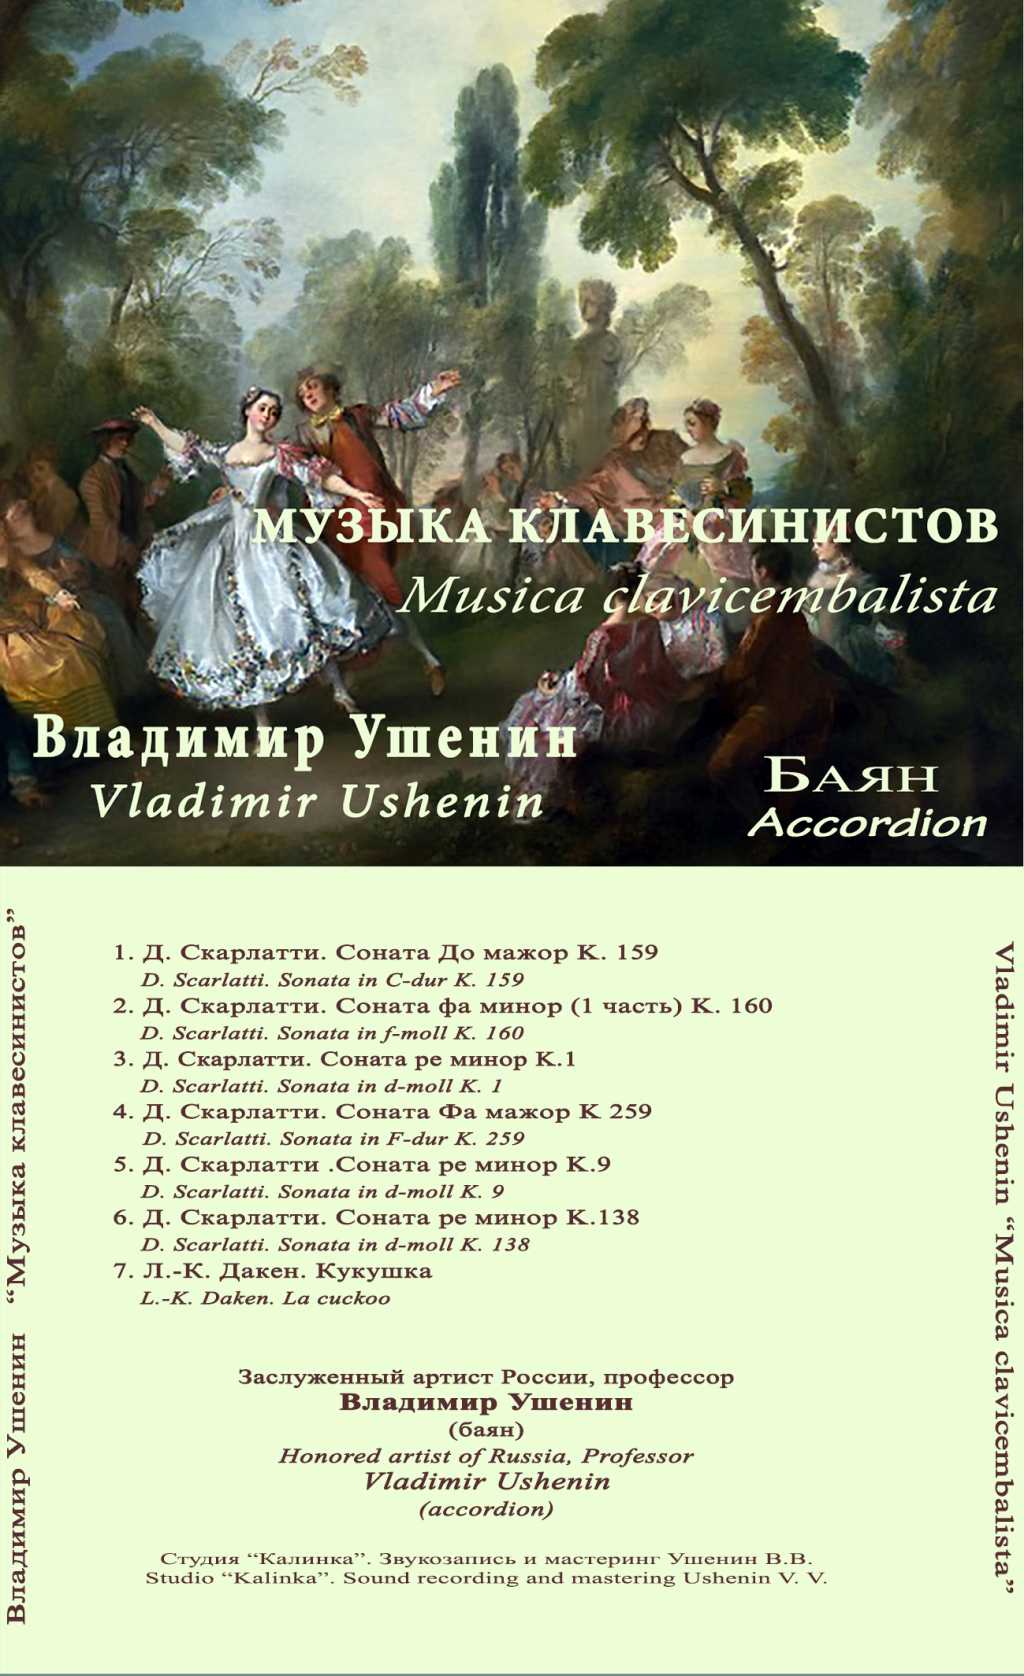 Сольный диск Владимира Ушенина Музыка клавесинистов